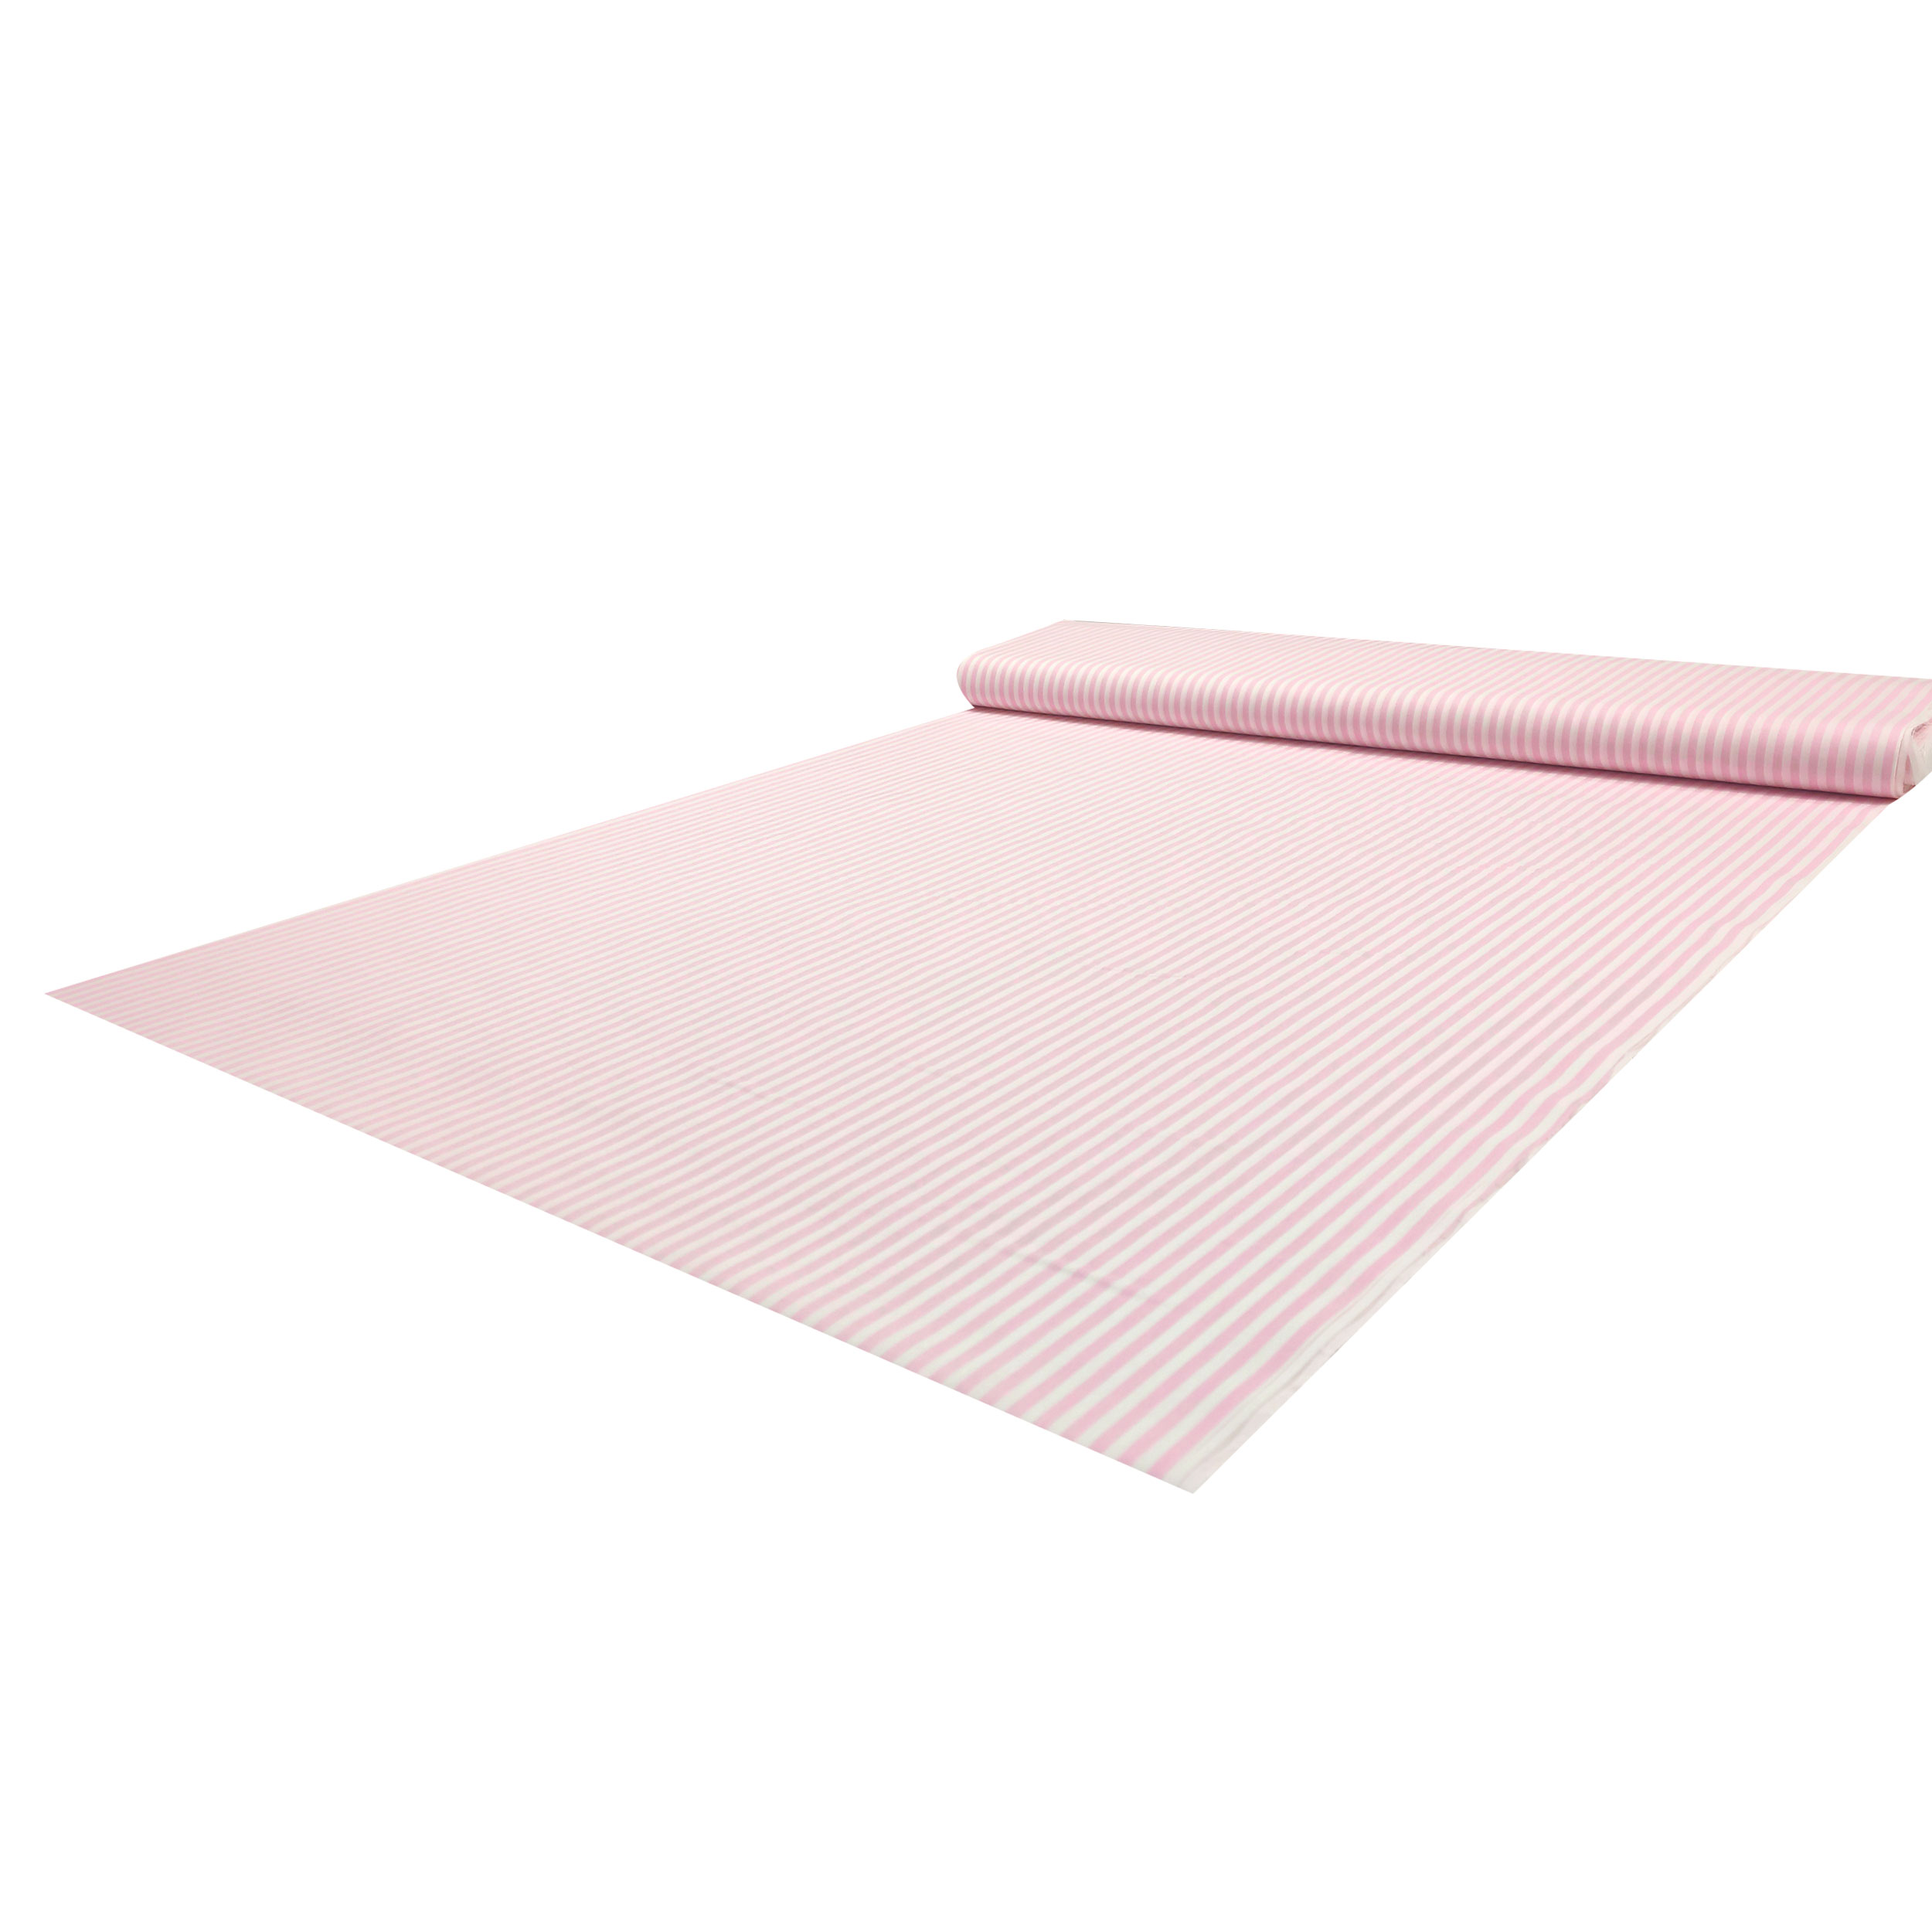 tessuto cotone righe rosa chiaro